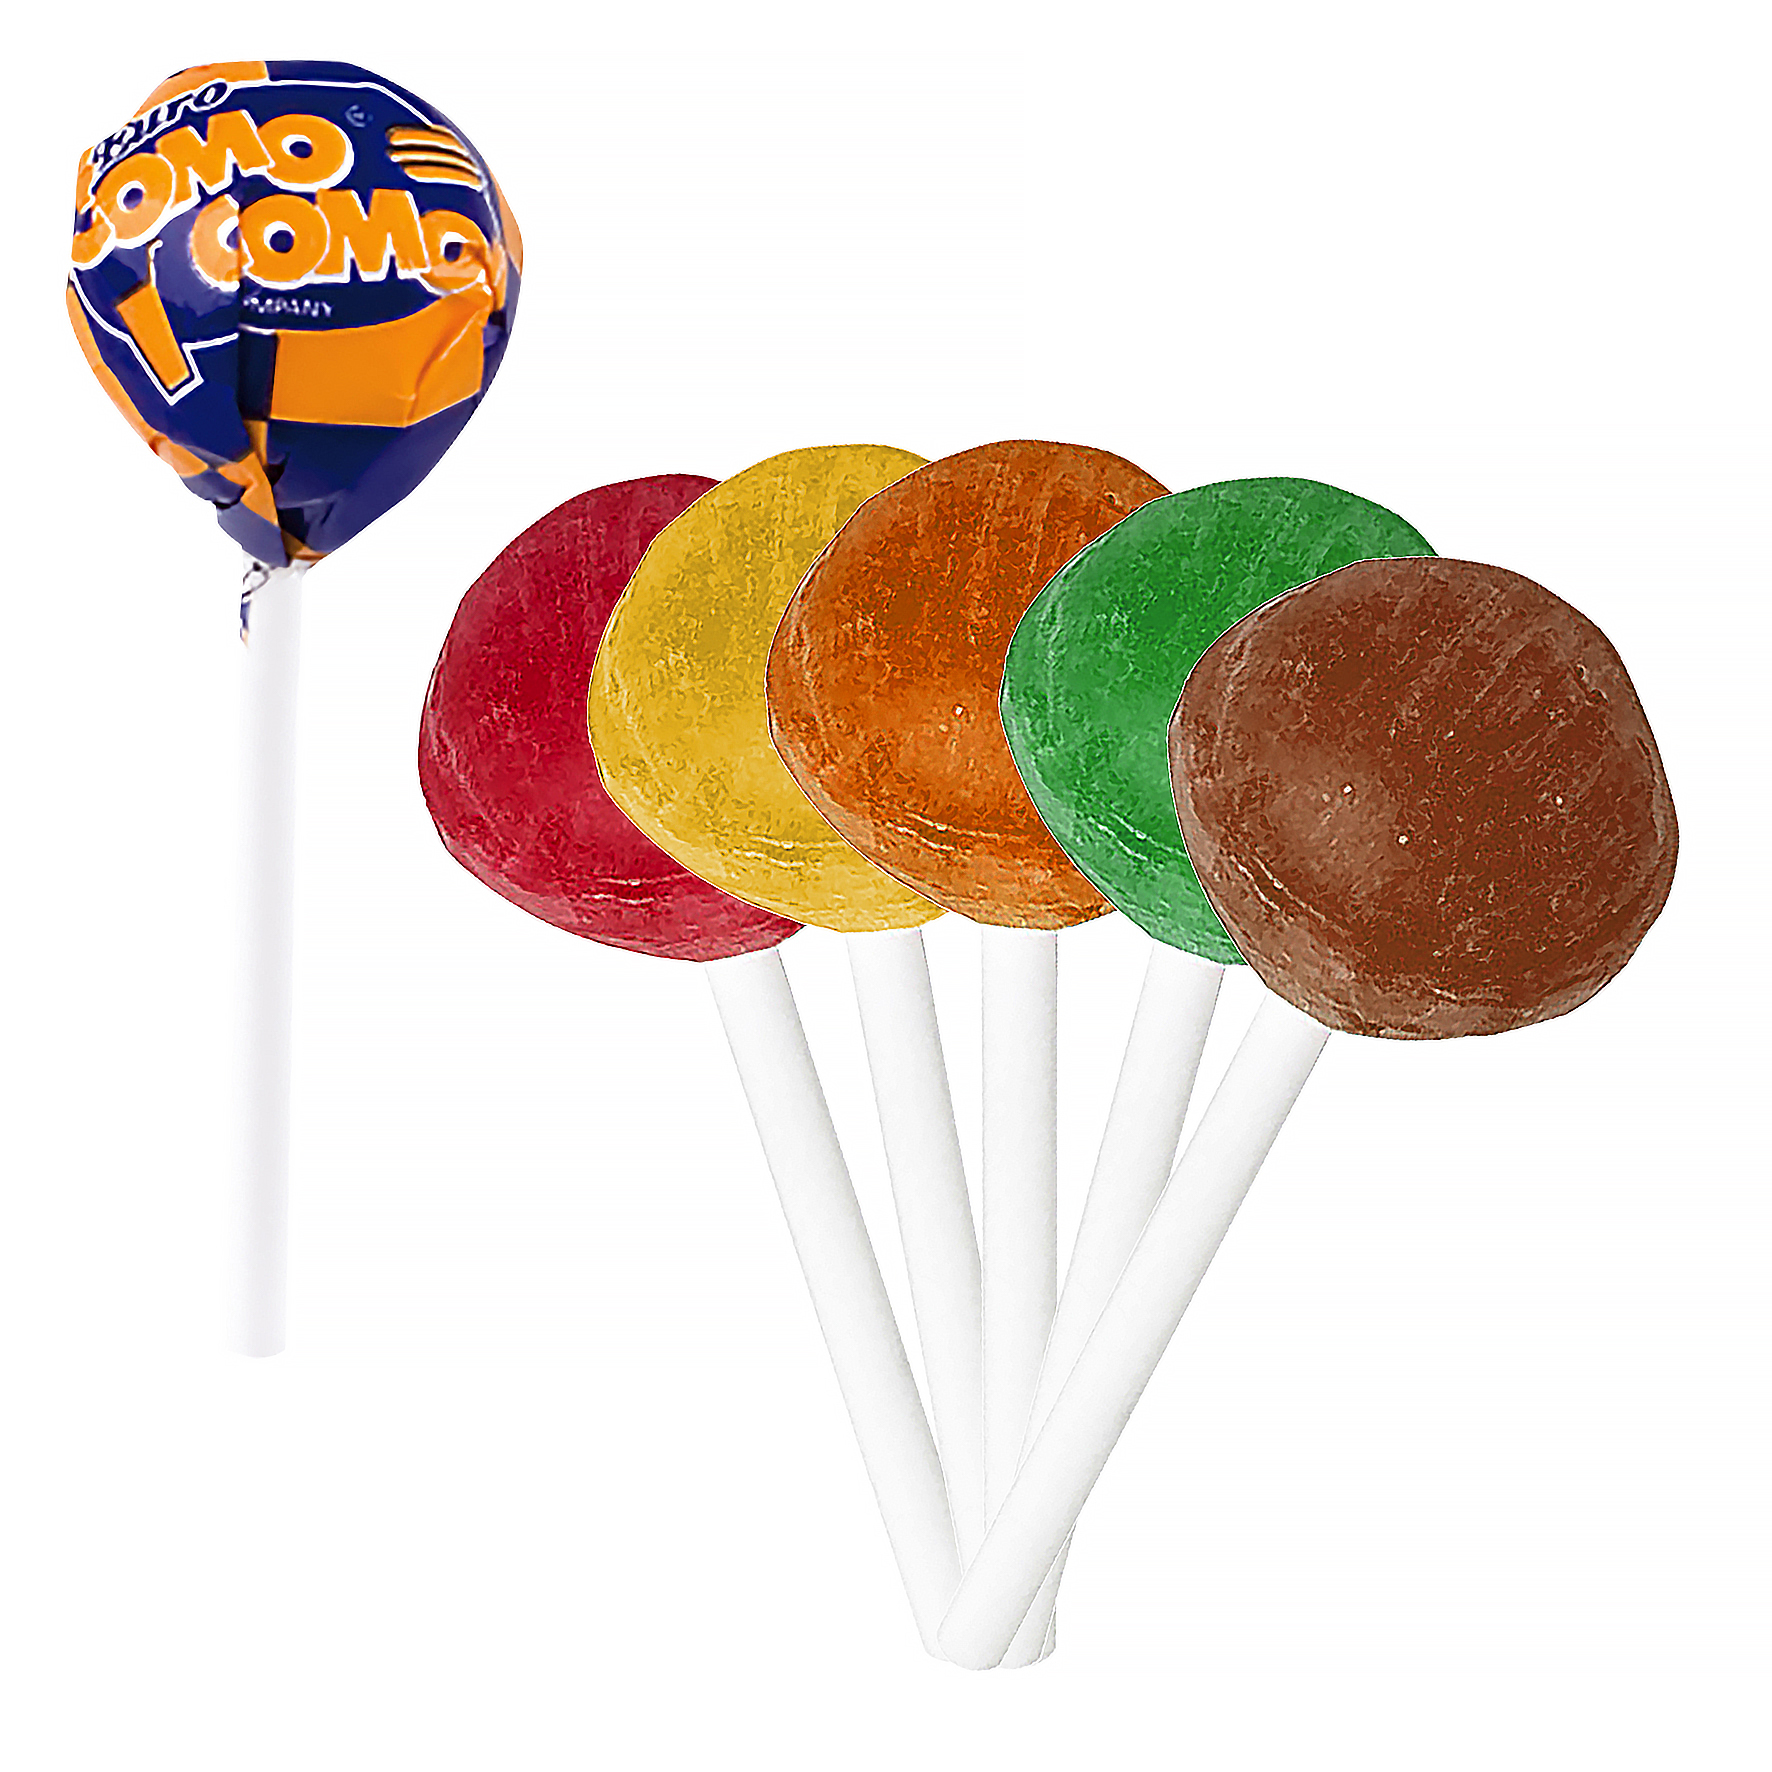 c 0040 00 09 - Flavoured lollipop (sugar free)